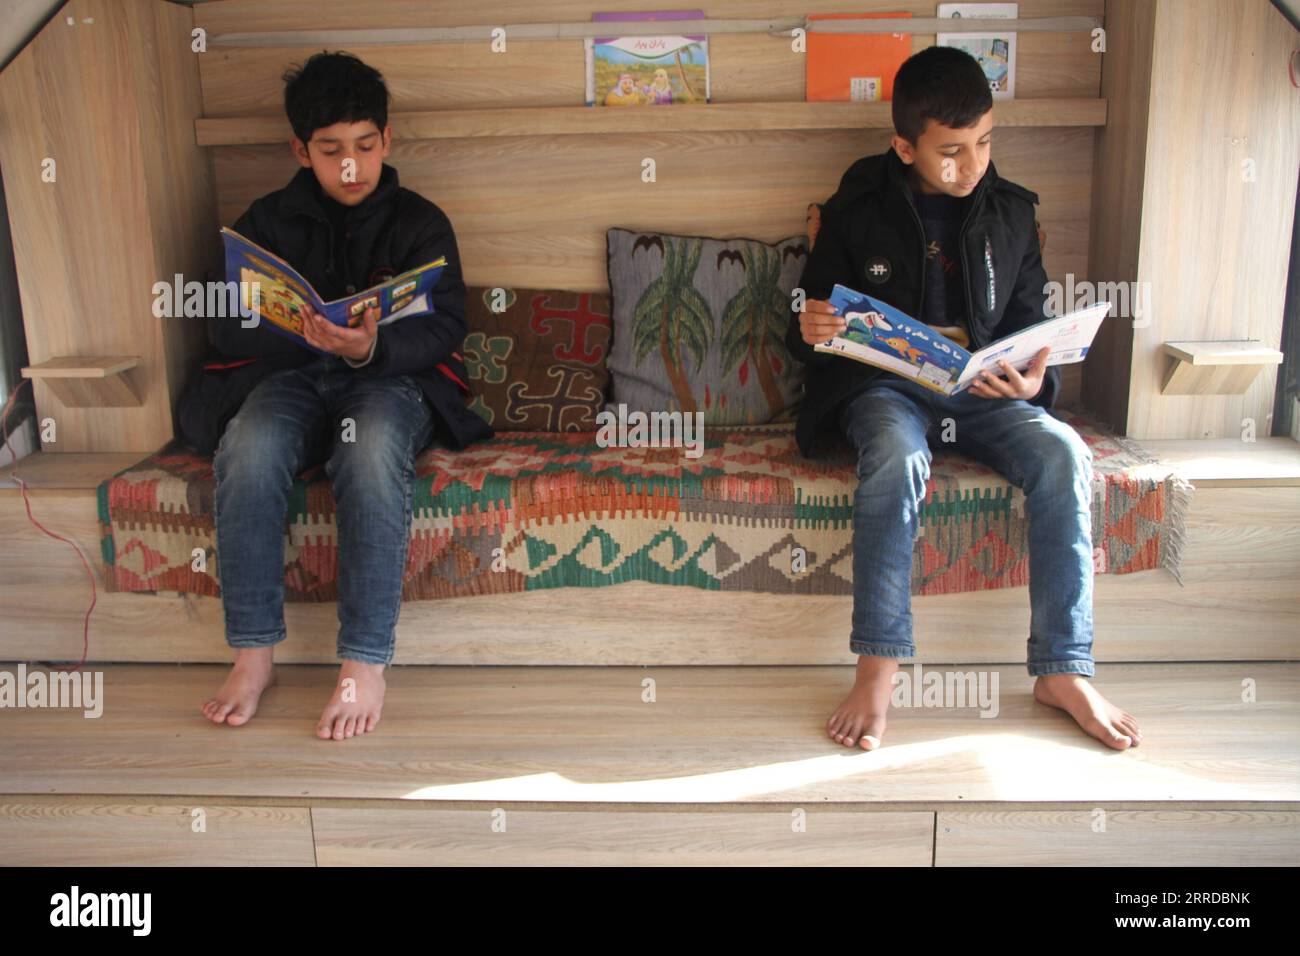 211216 -- KABUL, 16 dicembre 2021 -- i bambini leggono libri di cartoni animati in una biblioteca mobile a Kabul, capitale dell'Afghanistan, 14 dicembre 2021. Ispirato da un gruppo di giovani afghani, un gruppo di beneficenza locale fornisce servizi di biblioteca mobile gratuiti ai bambini in Kabul devastata dalla guerra. PER ANDARE CON caratteristiche: La biblioteca pubblica afghana si sforza di fornire un libro per tutti in mezzo a una guerra prolungata foto di /Xinhua AFGHANISTAN-KABUL-MOBILE BIBLIOTECA SaifurahmanxSafi PUBLICATIONxNOTxINxCHN Foto Stock